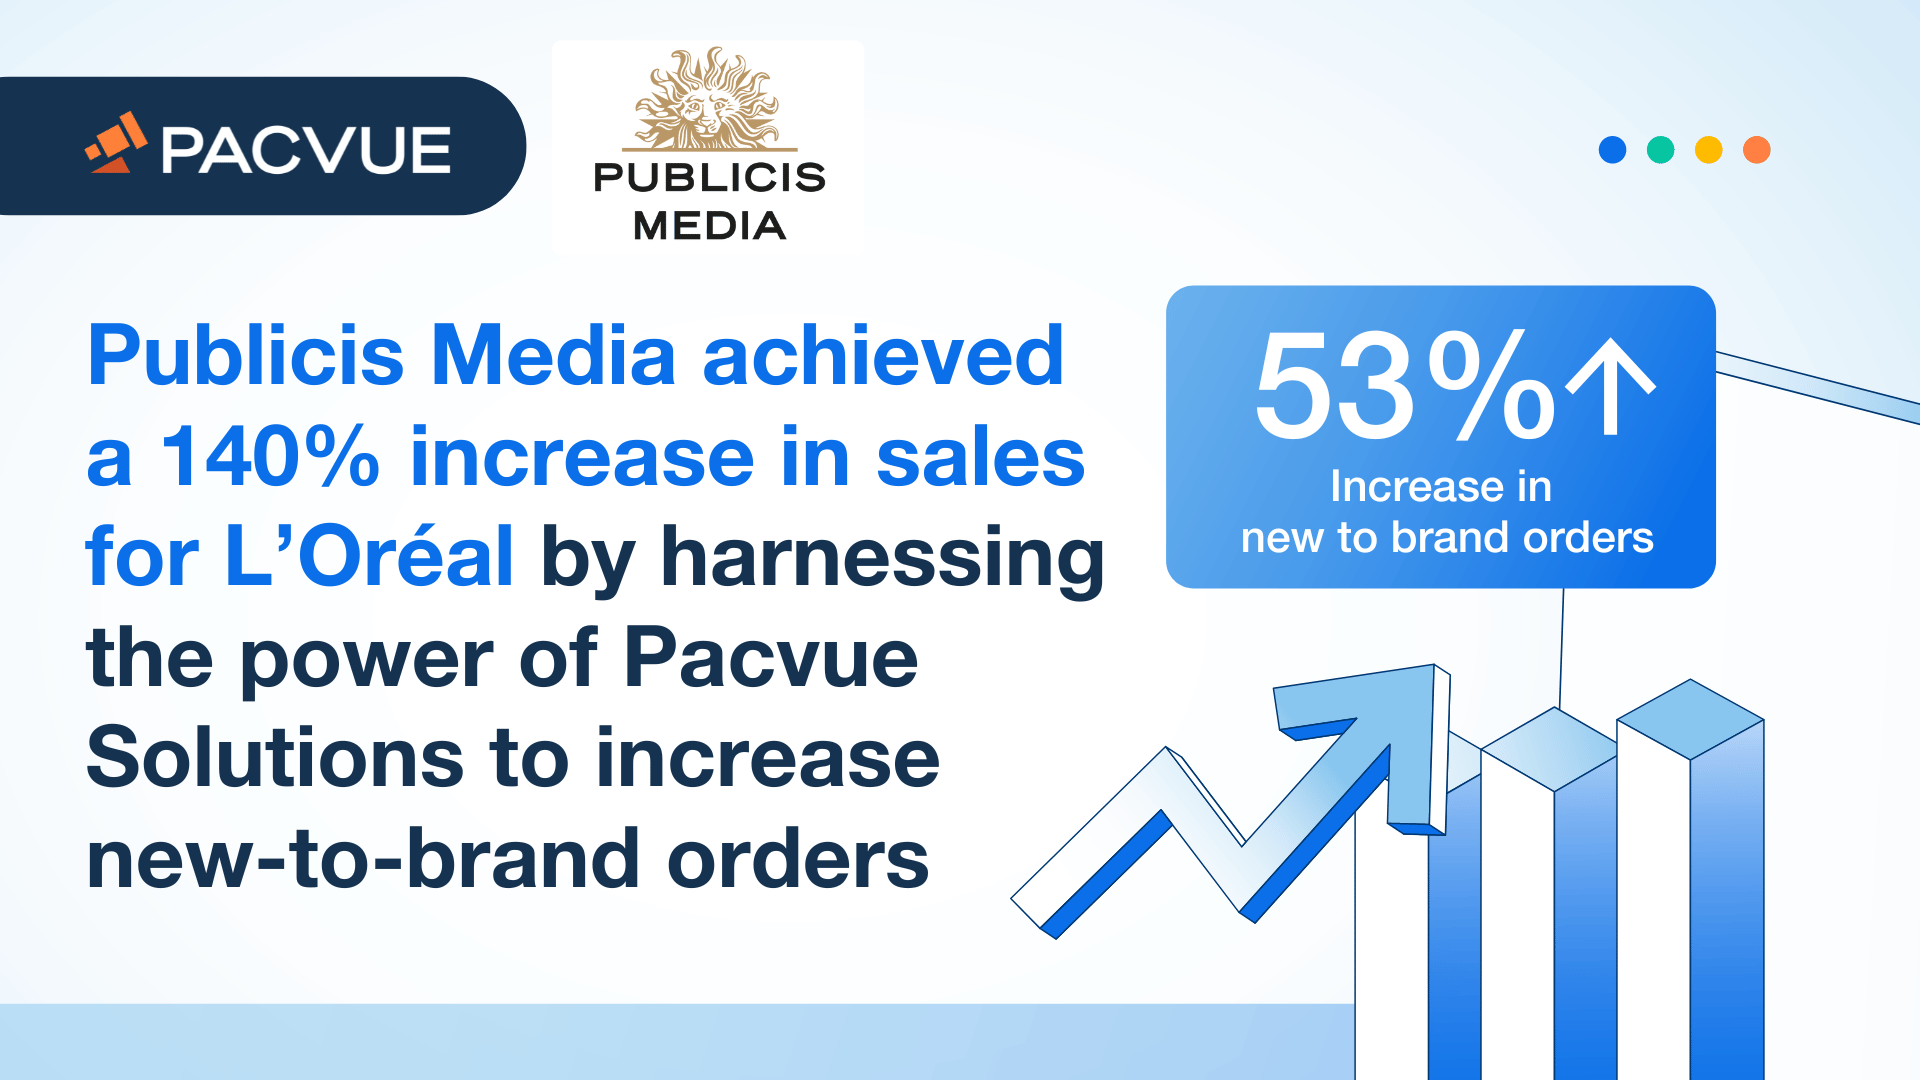 ピュブリシスメディアは、Pacvue ソリューションを活用し、新規ブランドへの発注を増やすことで、ロレアル社の売上を140%増加させた。